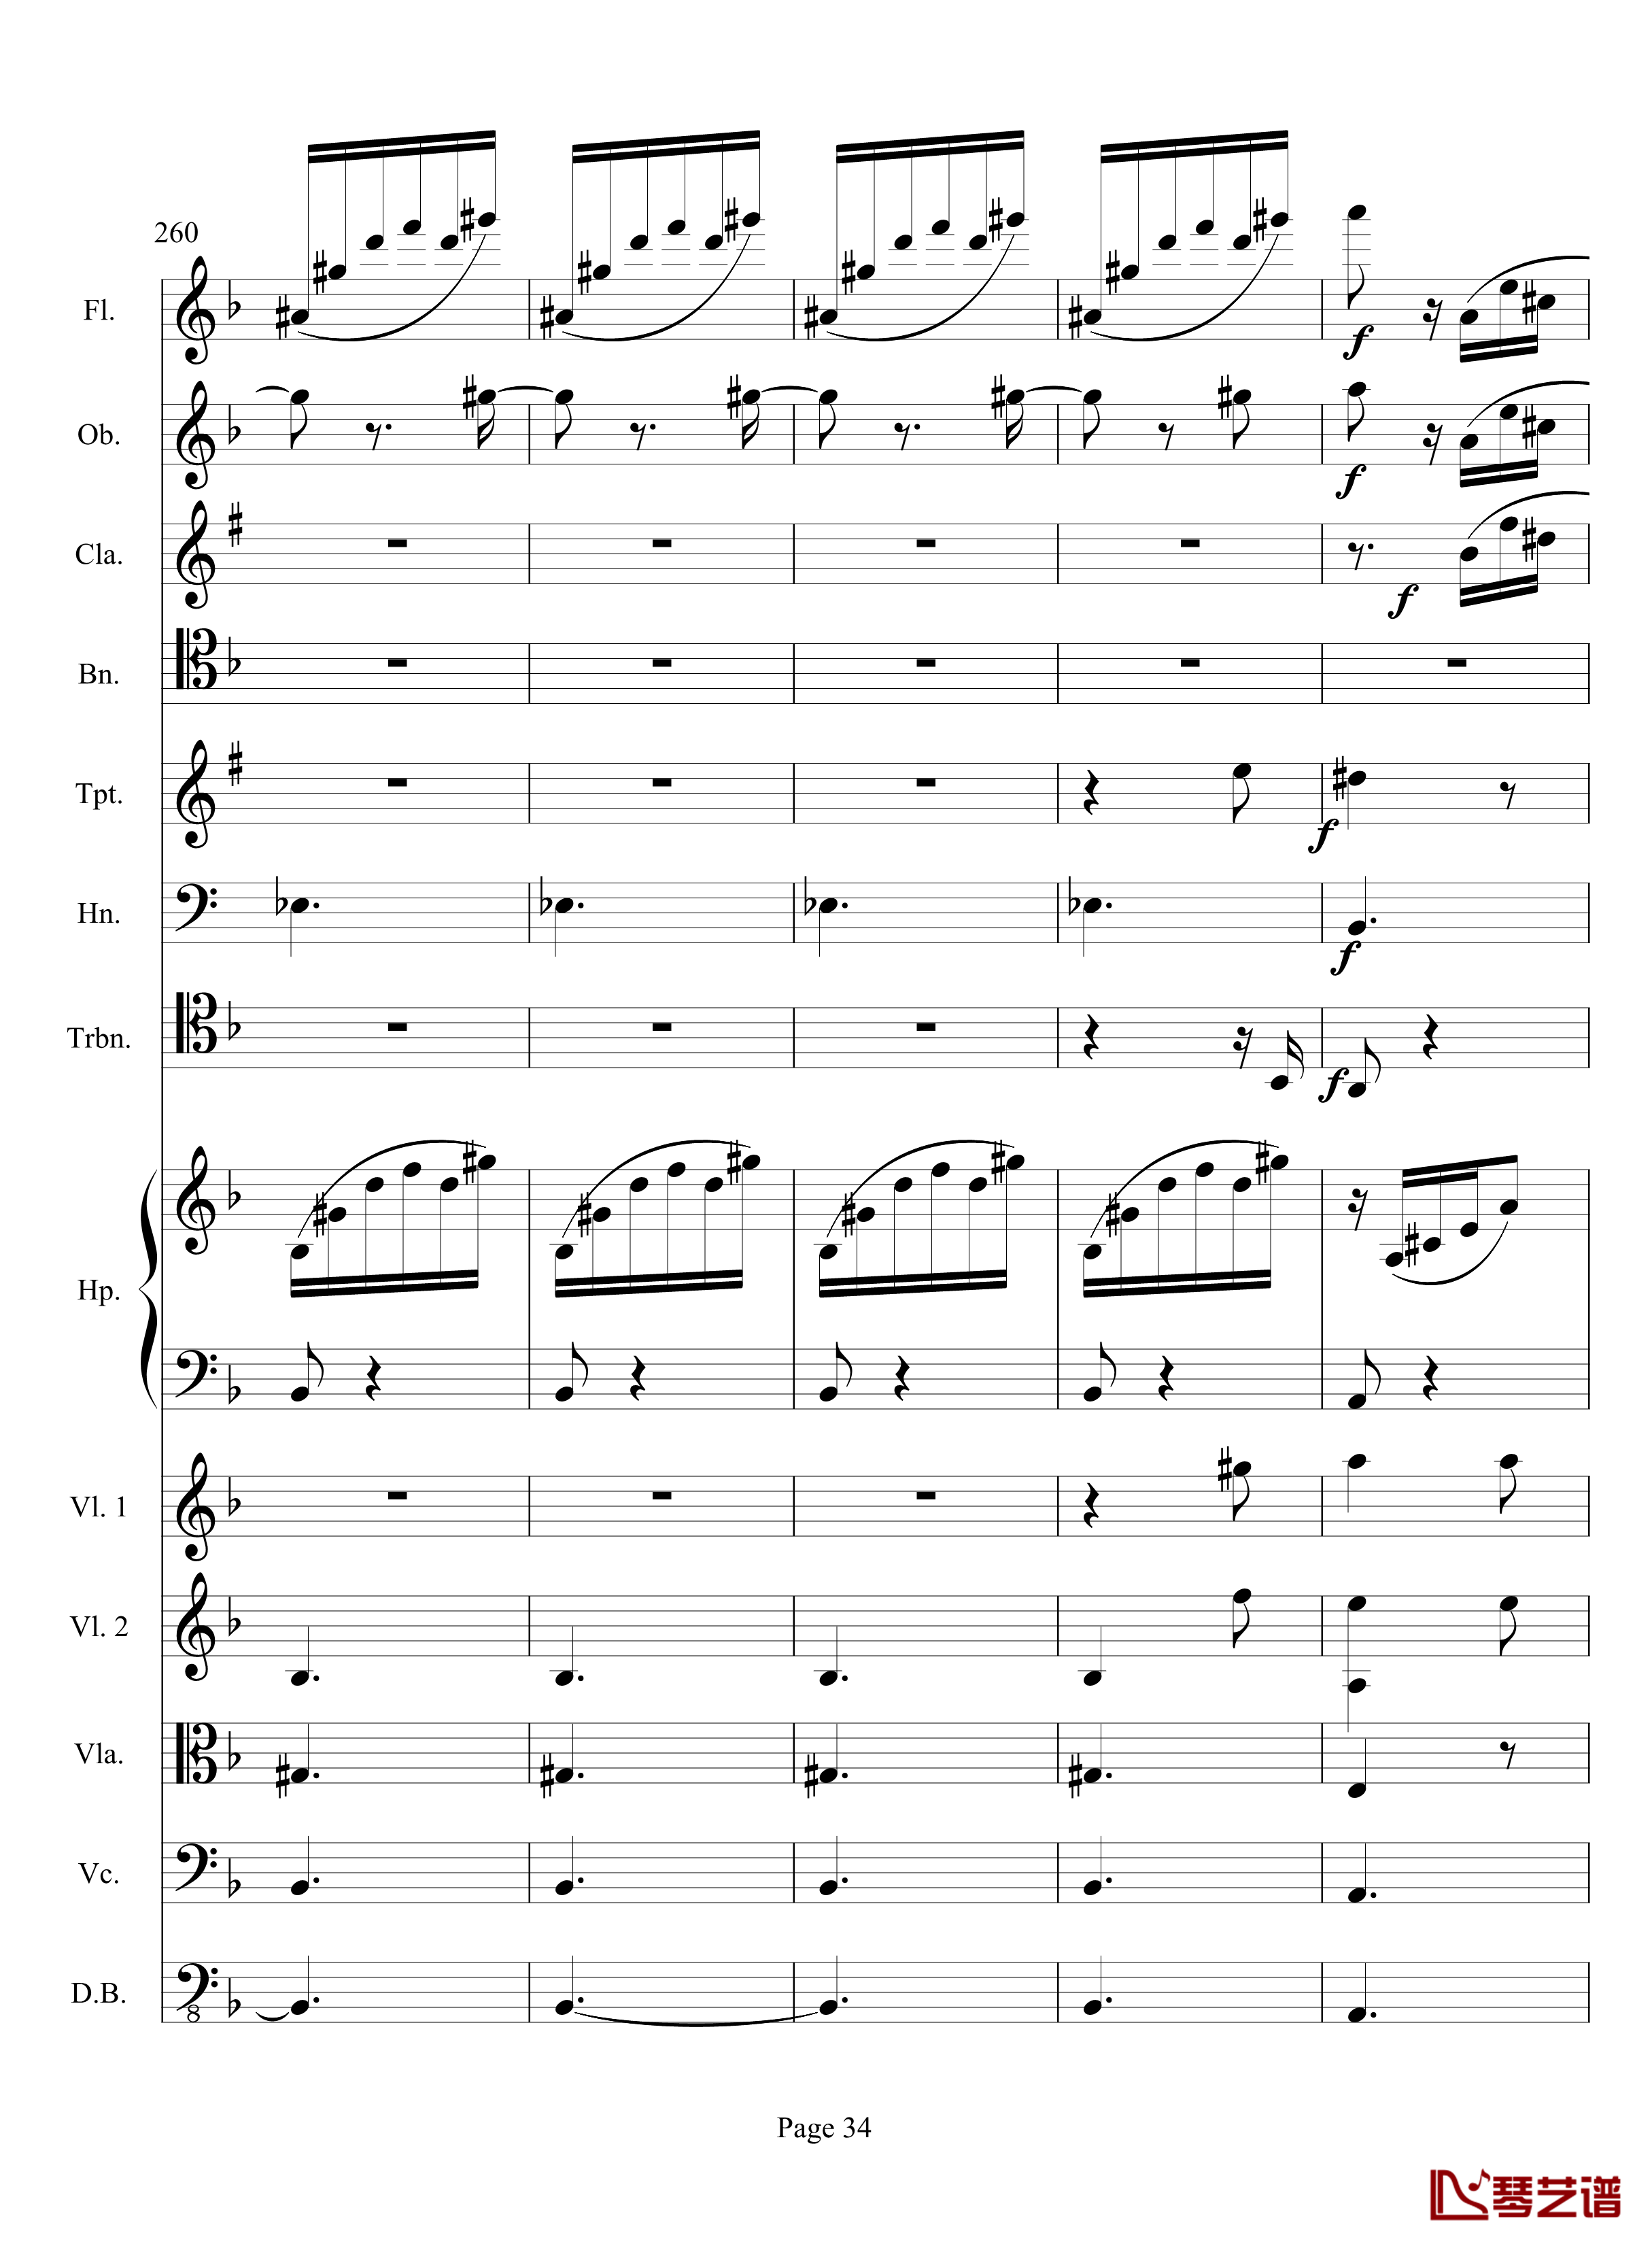 奏鸣曲之交响钢琴谱-第17首-Ⅲ-贝多芬-beethoven34